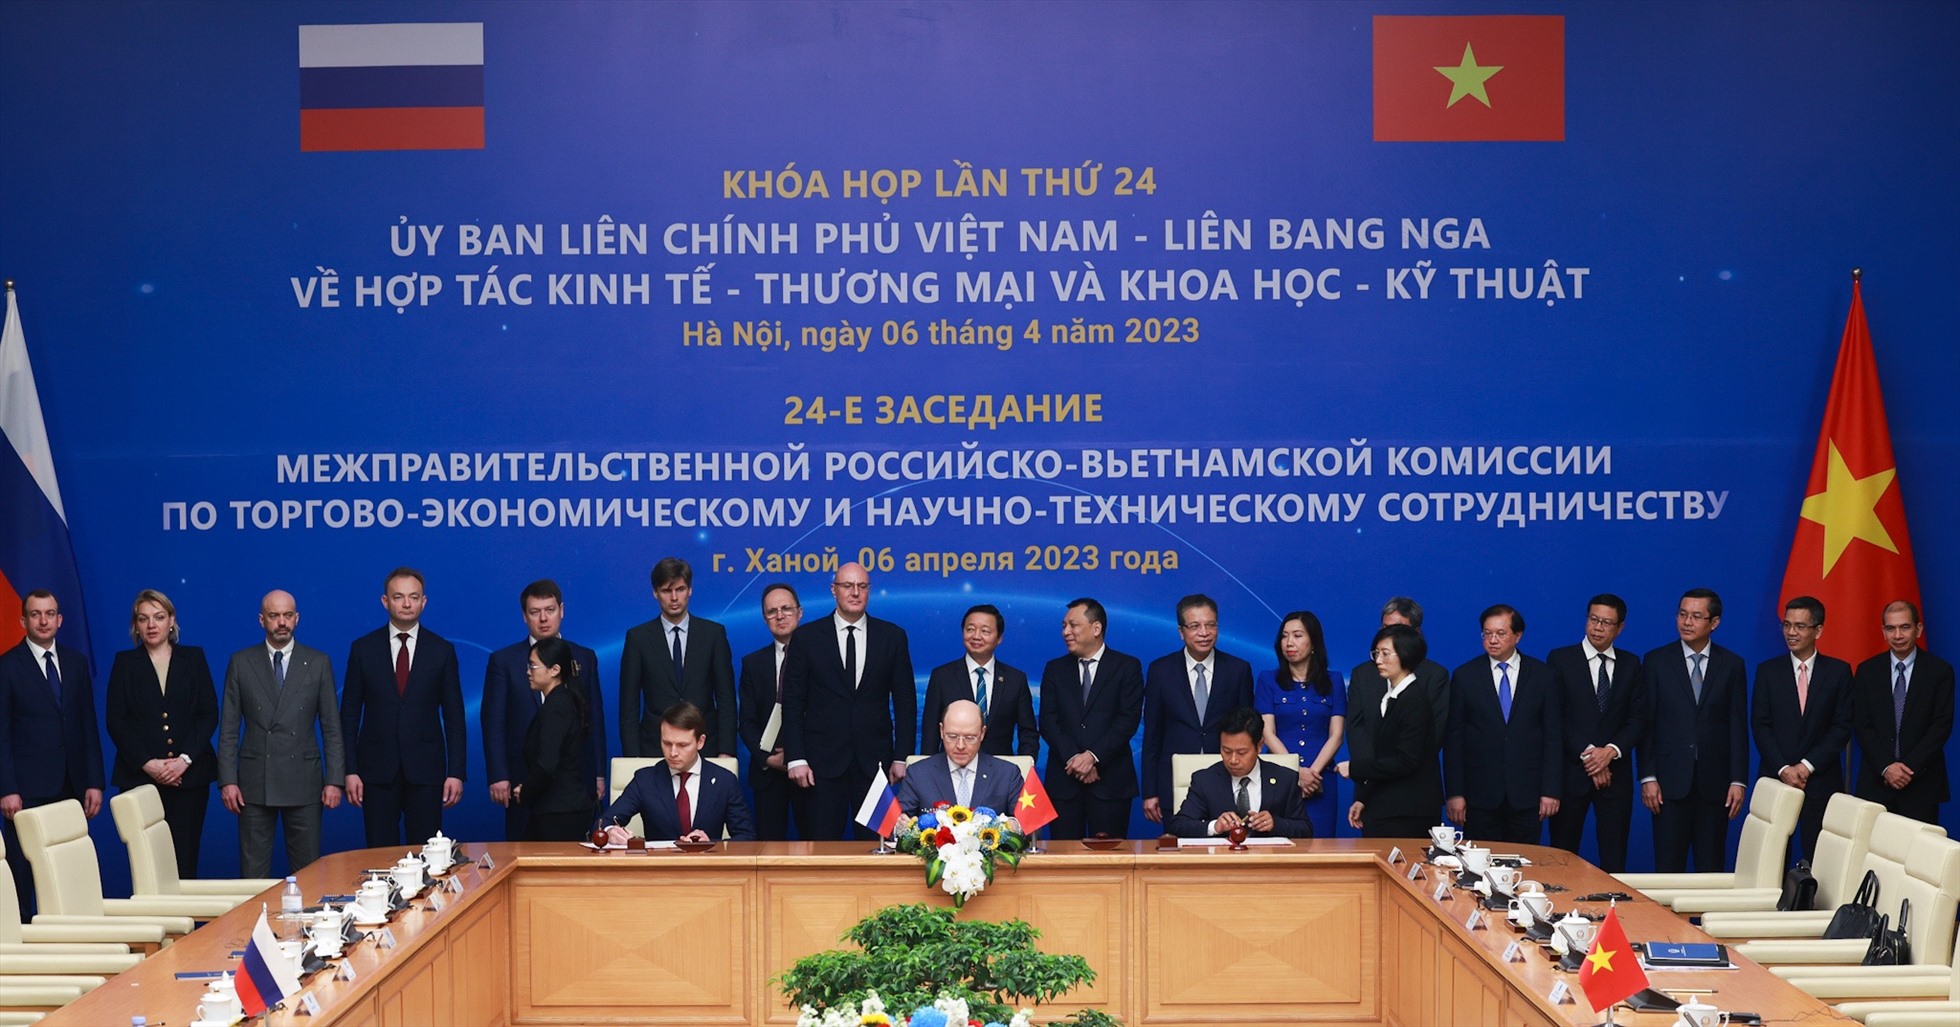 Gần đây nhất, khóa họp lần thứ 23 của Ủy ban liên Chính phủ Việt Nam - Liên bang Nga về hợp tác kinh tế - thương mại và khoa học - kỹ thuật diễn ra bằng hình thức trực tuyến vào tháng 10.2021. Ảnh: Hải Nguyễn